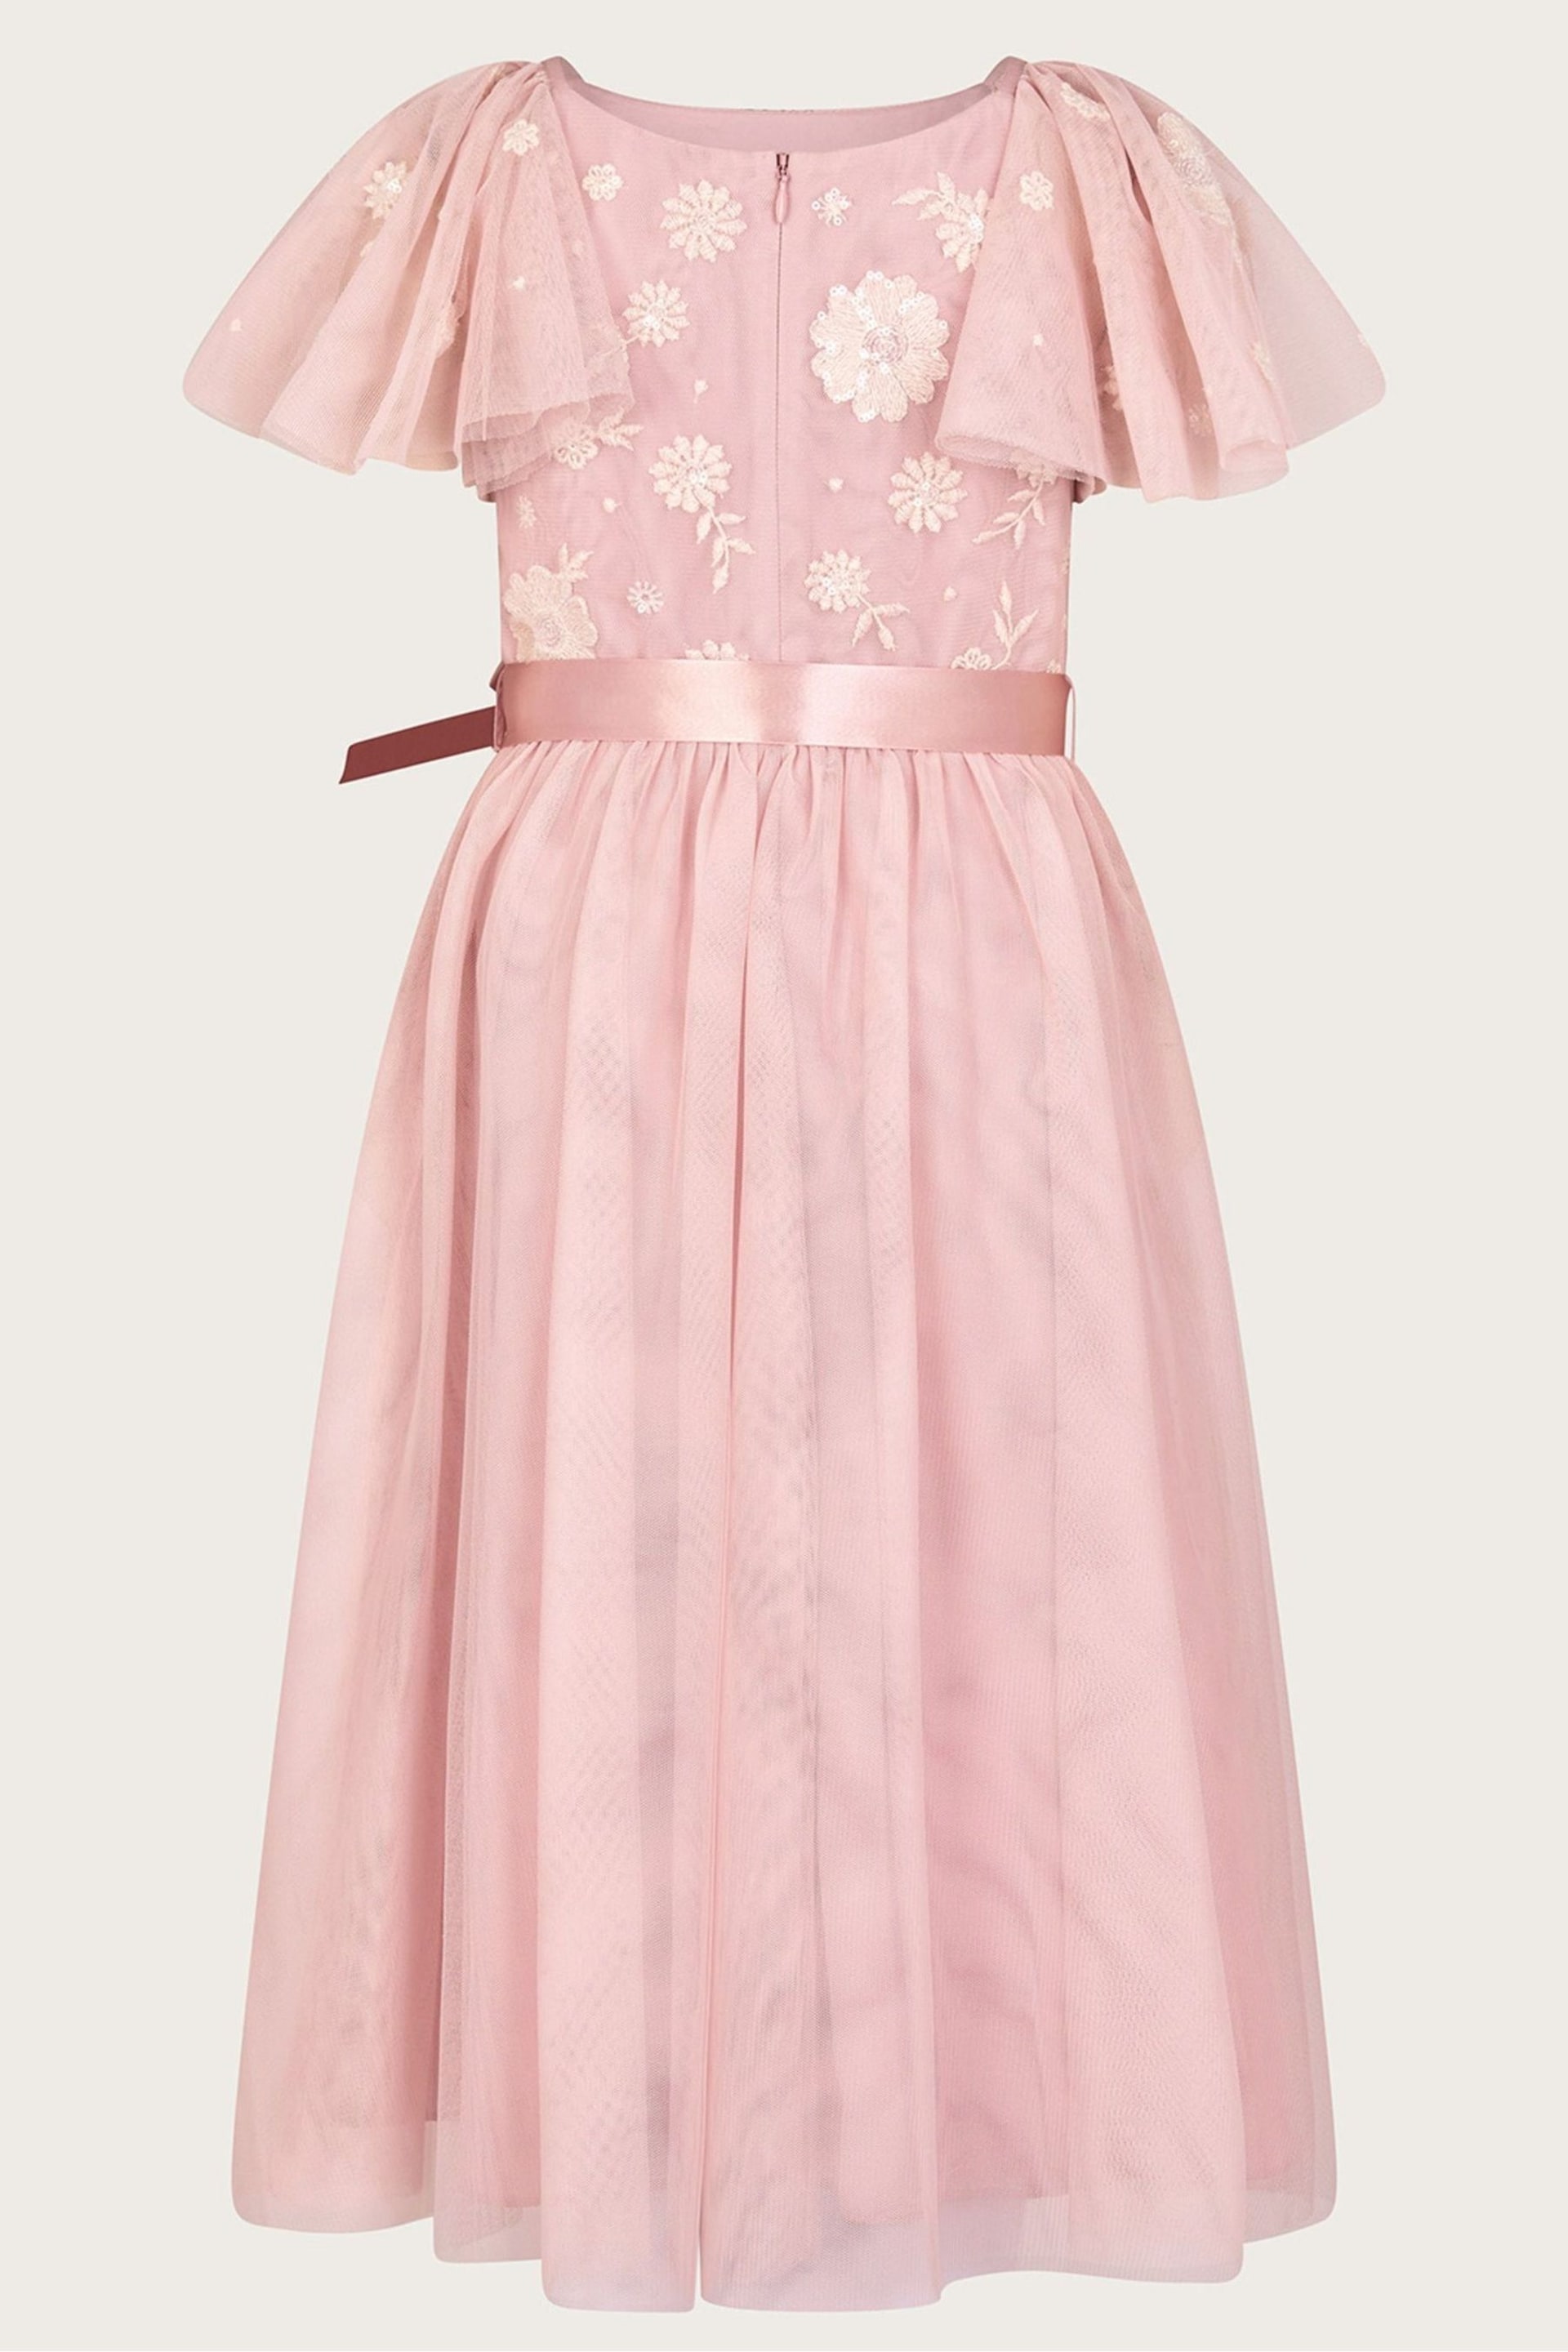 Monsoon Pink Giselle Embellished Floral Dress - Image 2 of 3